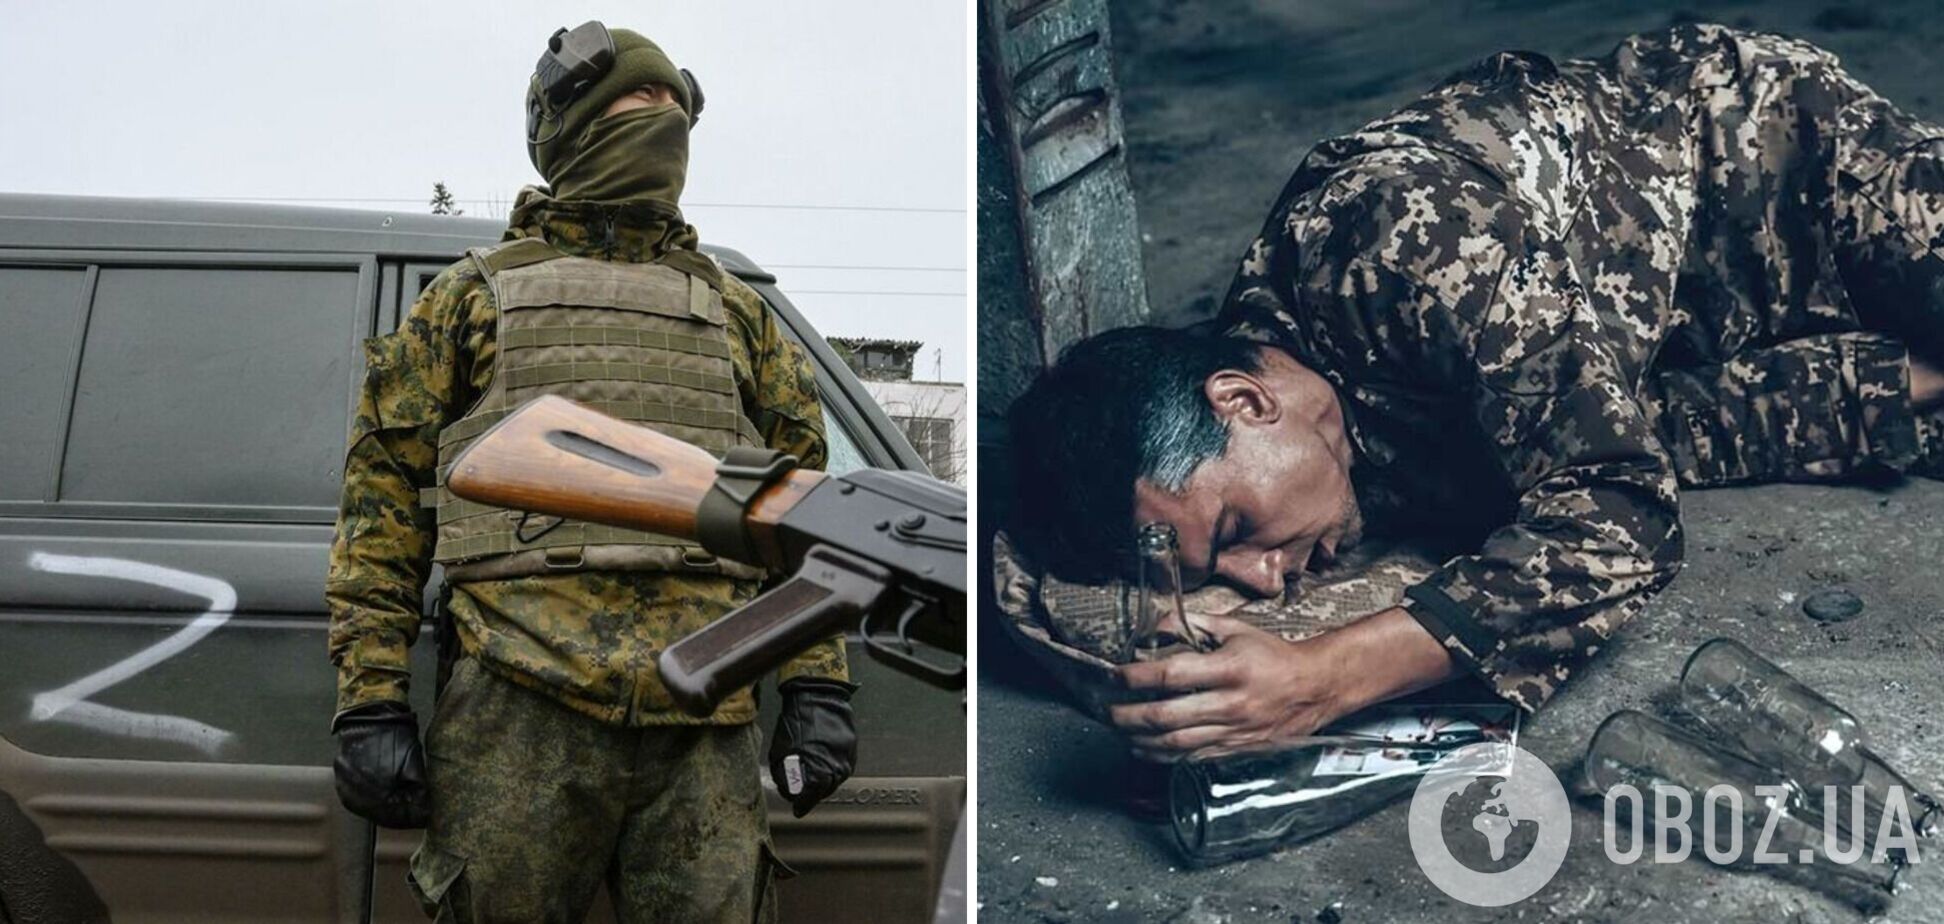 'Страшно помирати, грошей не дають': окупант поскаржився батькові на тяжкі будні війни проти України і пияцтво 'товаришів'